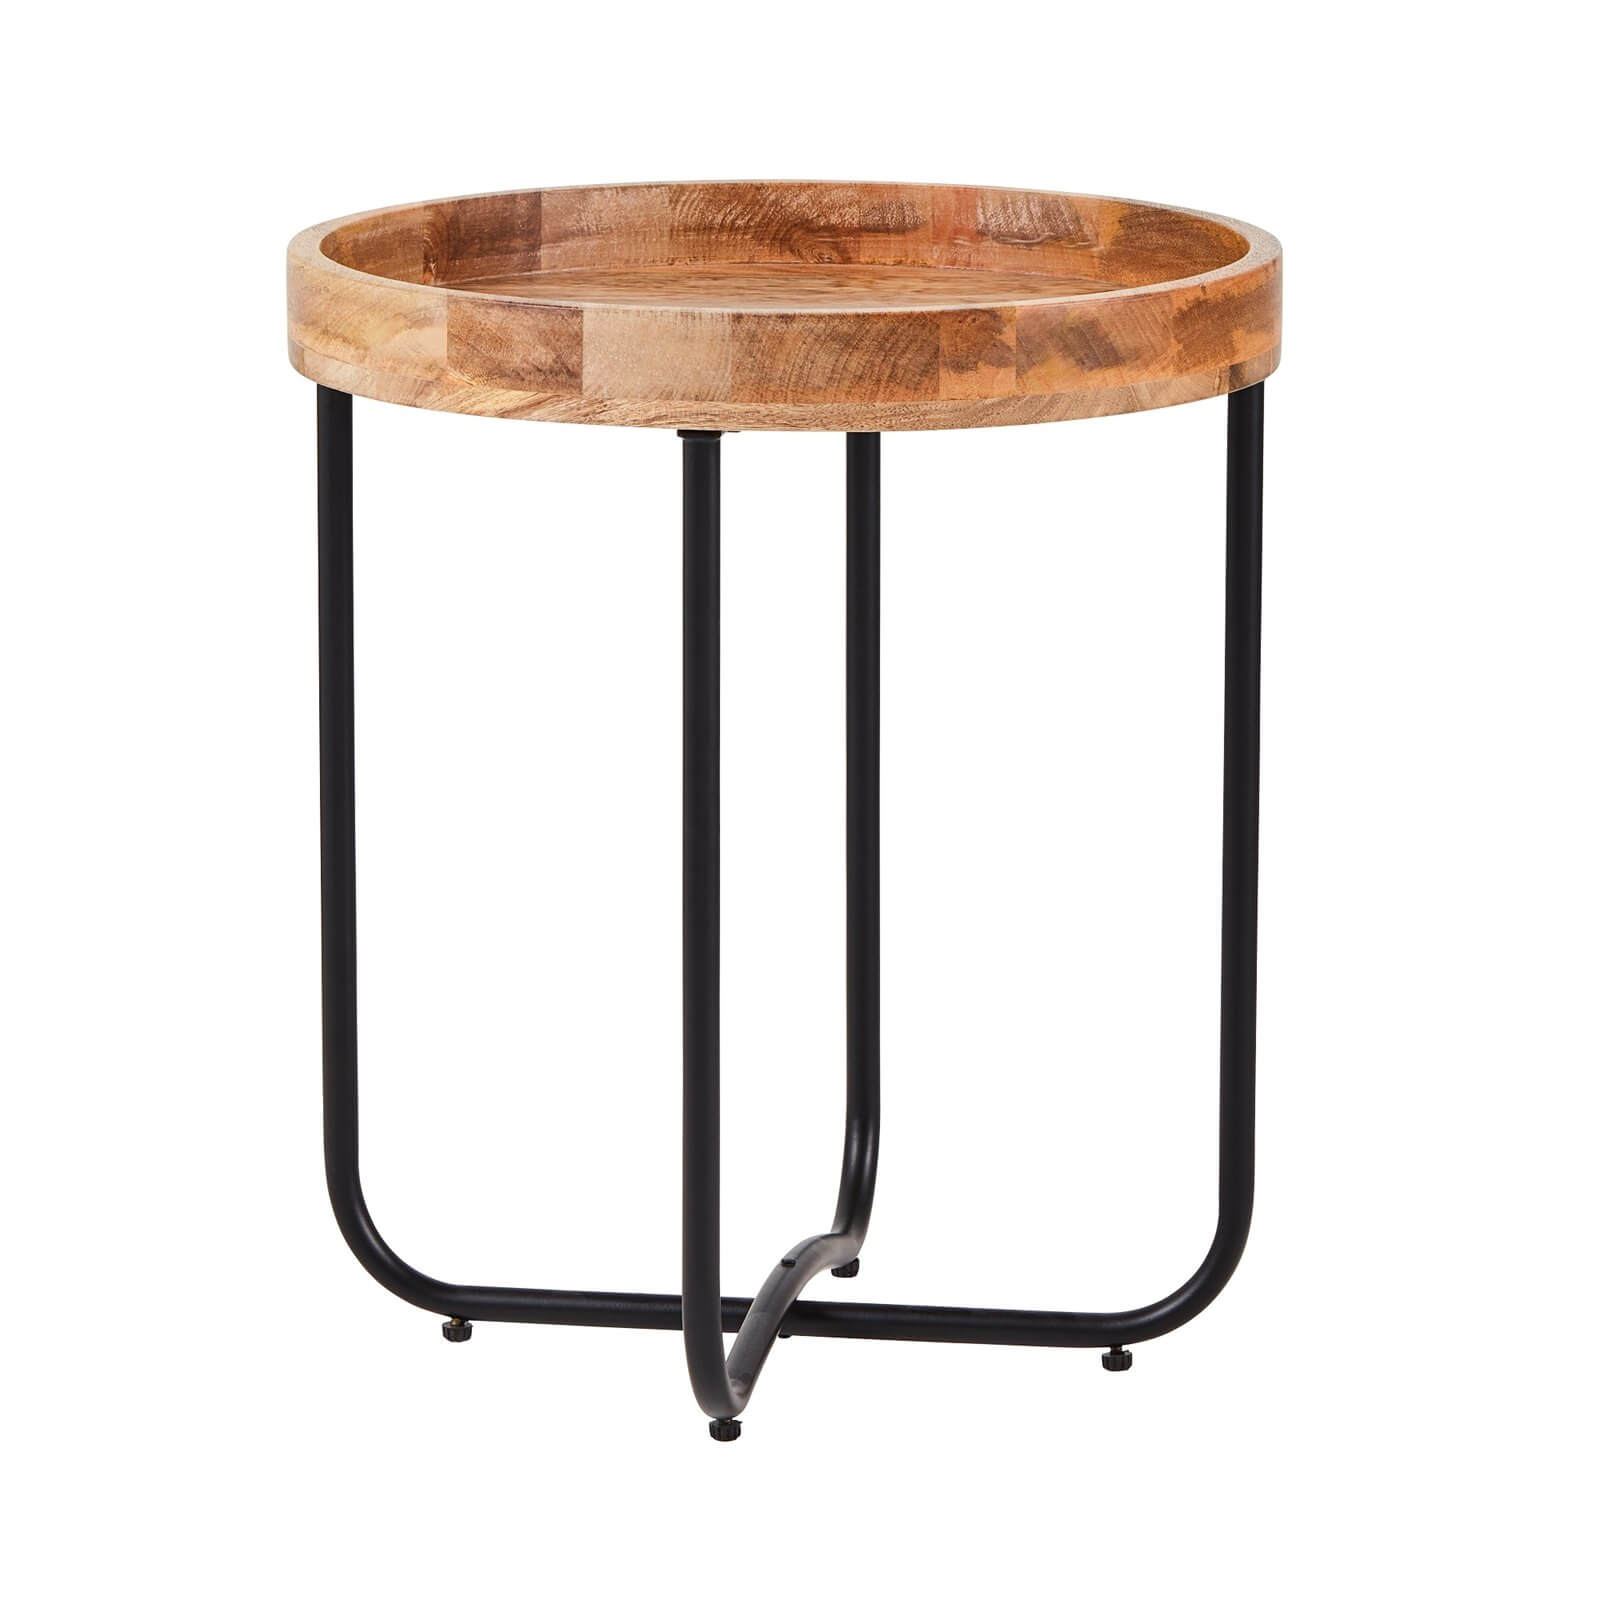 Fenton Side Table - Wood